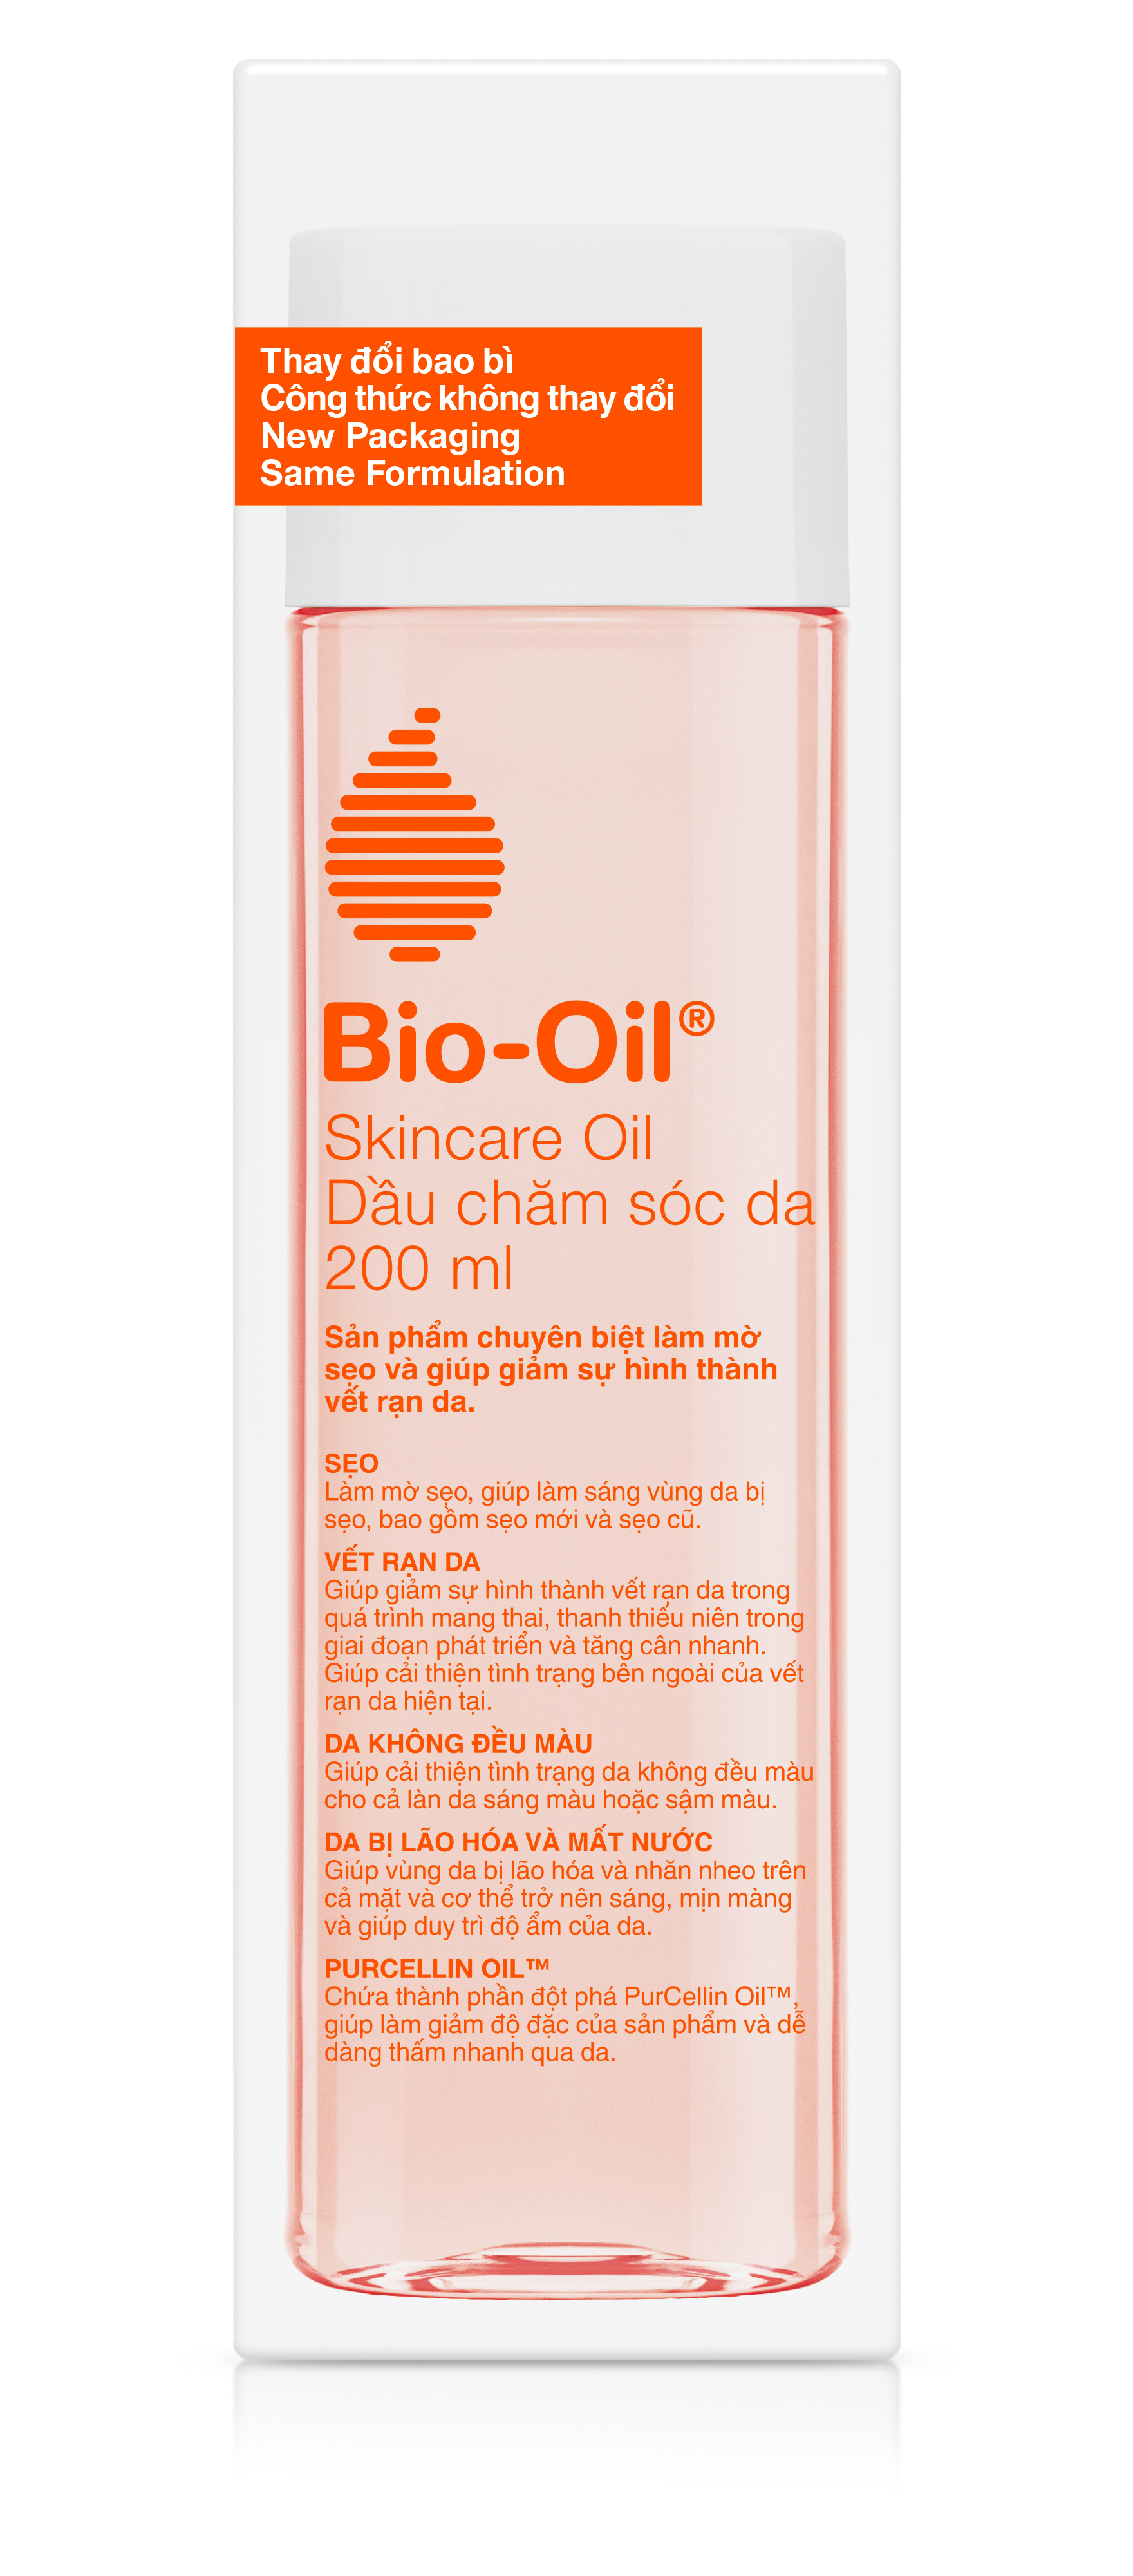 Dầu chăm sóc da giúp cải thiện rạn da, mờ sẹo và đều màu da - BIO-OIL SKINCARE OIL (chai 200ml)